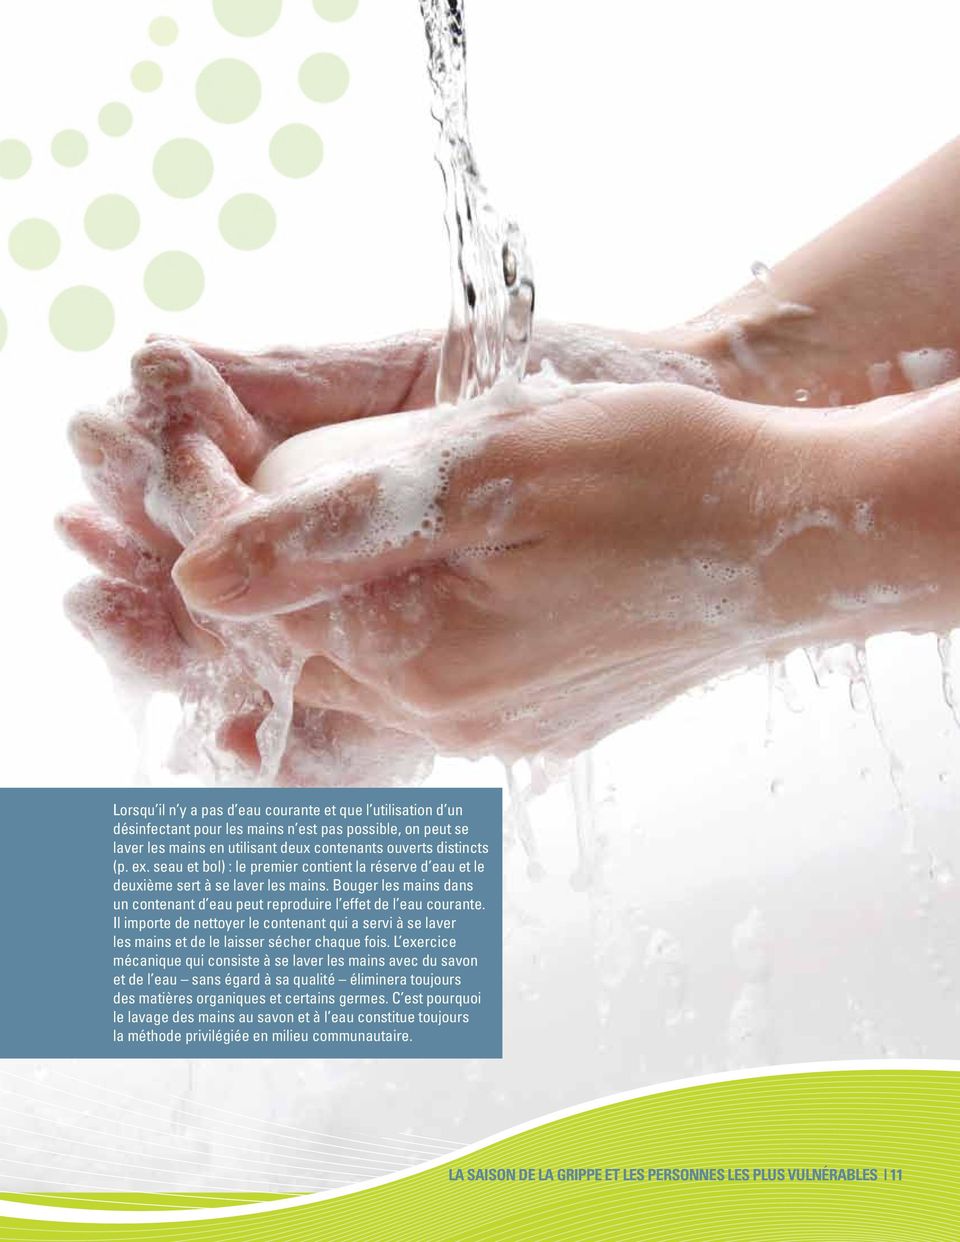 Il importe de nettoyer le contenant qui a servi à se laver les mains et de le laisser sécher chaque fois.